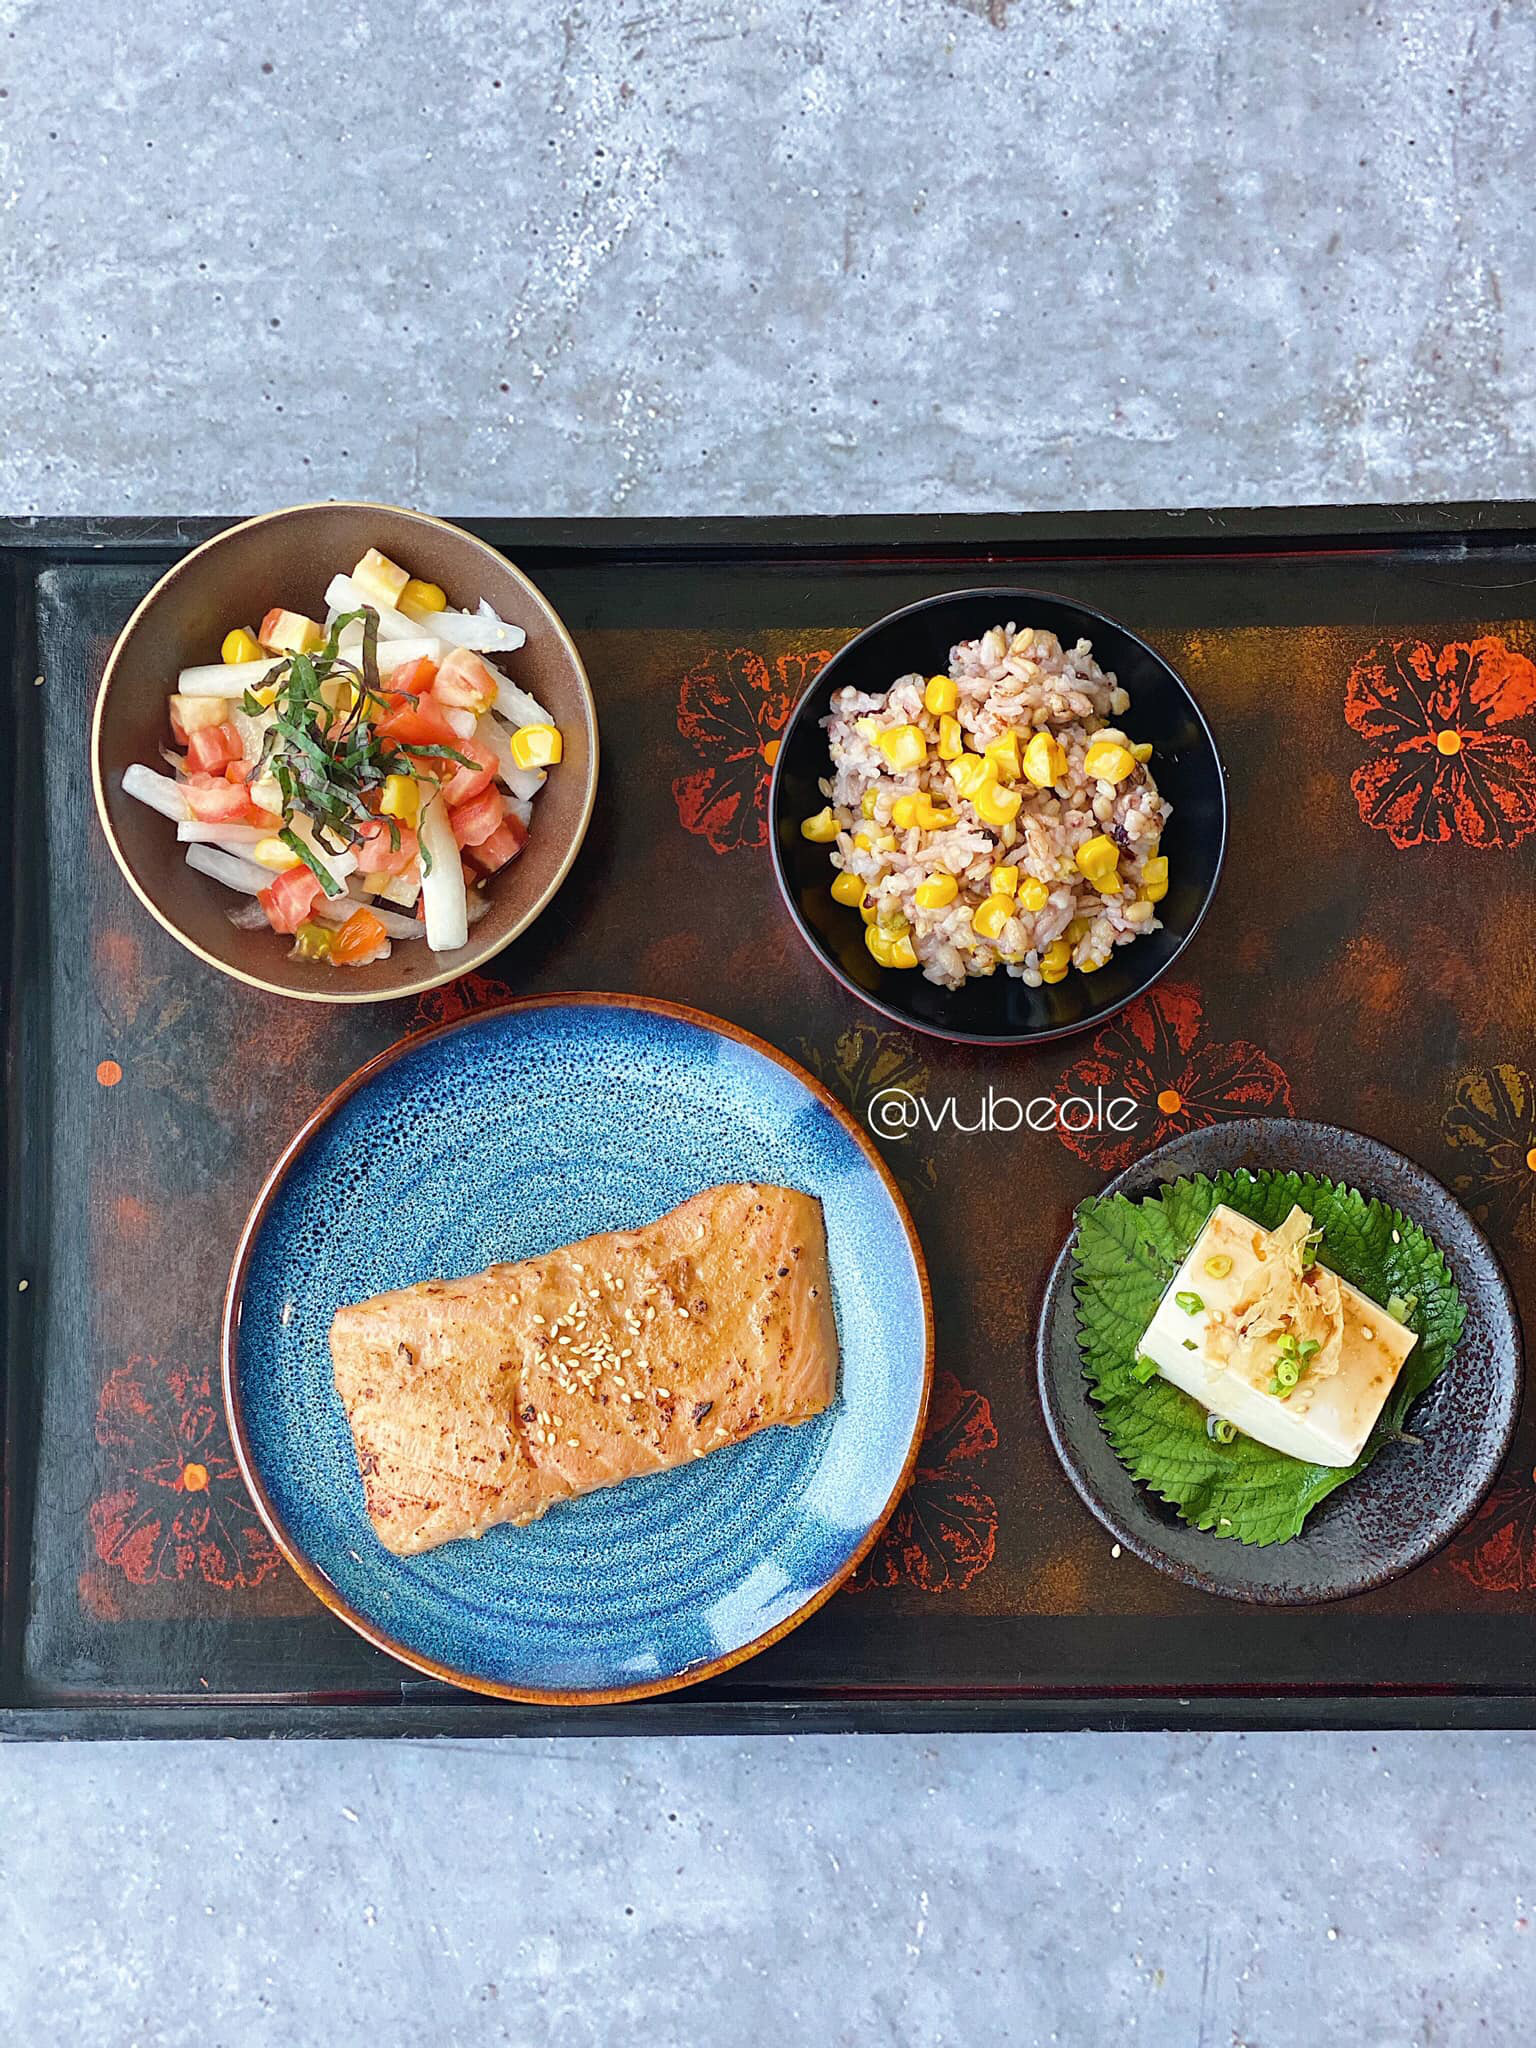 Trai đẹp Hà Thành chia sẻ thực đơn Eat Clean bữa trưa trong 7 ngày theo phong cách Nhật Bản, vừa ngon vừa giúp giảm cân, khỏe mạnh - Ảnh 6.